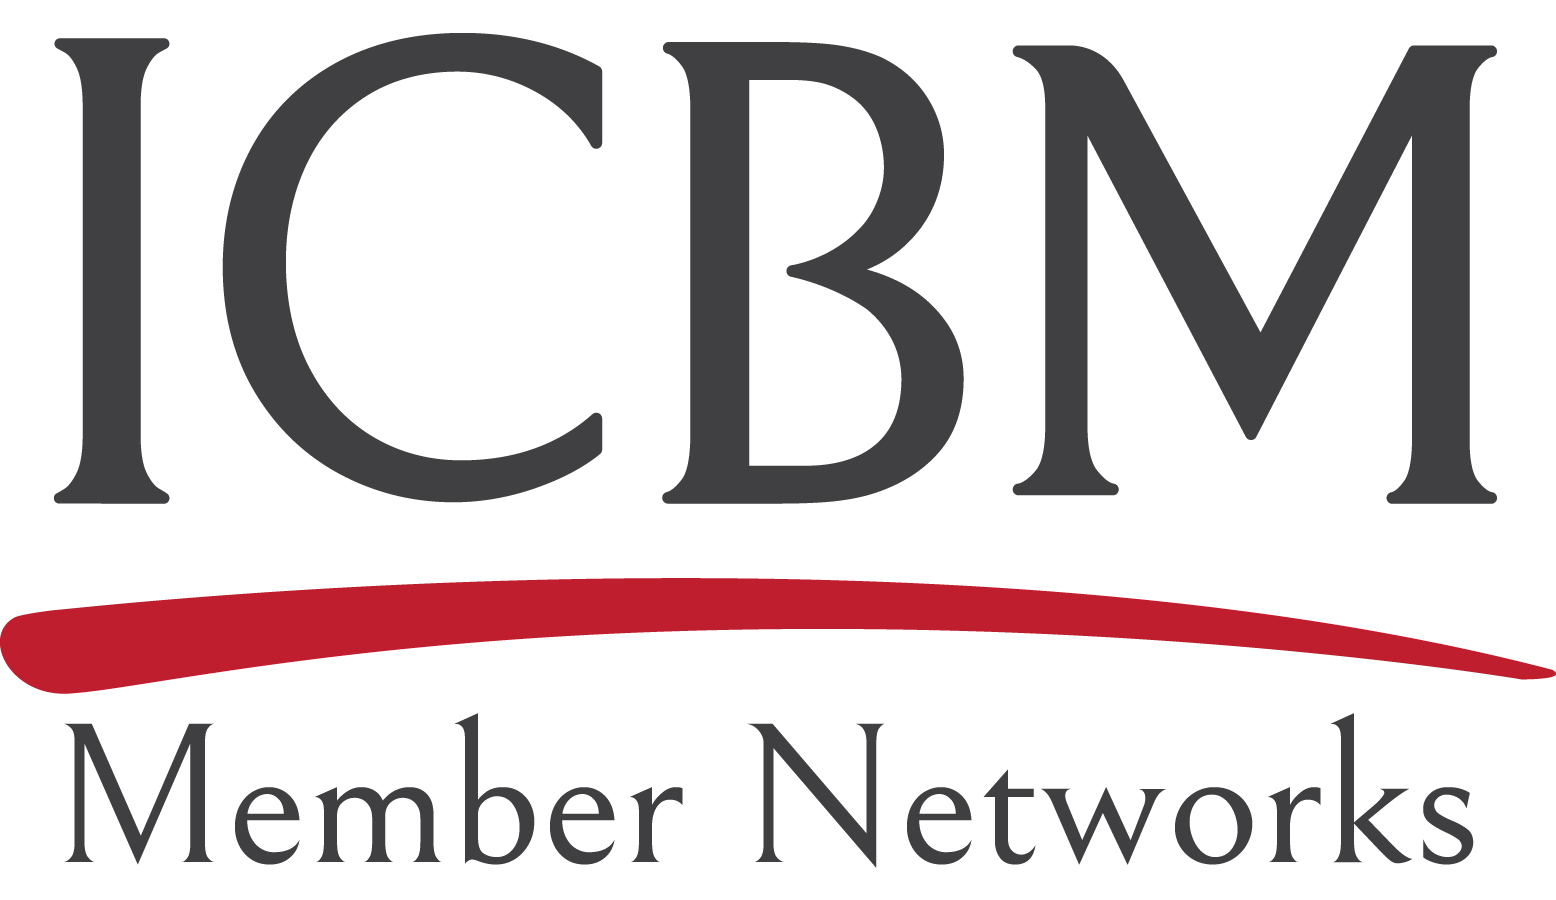 CCO Network